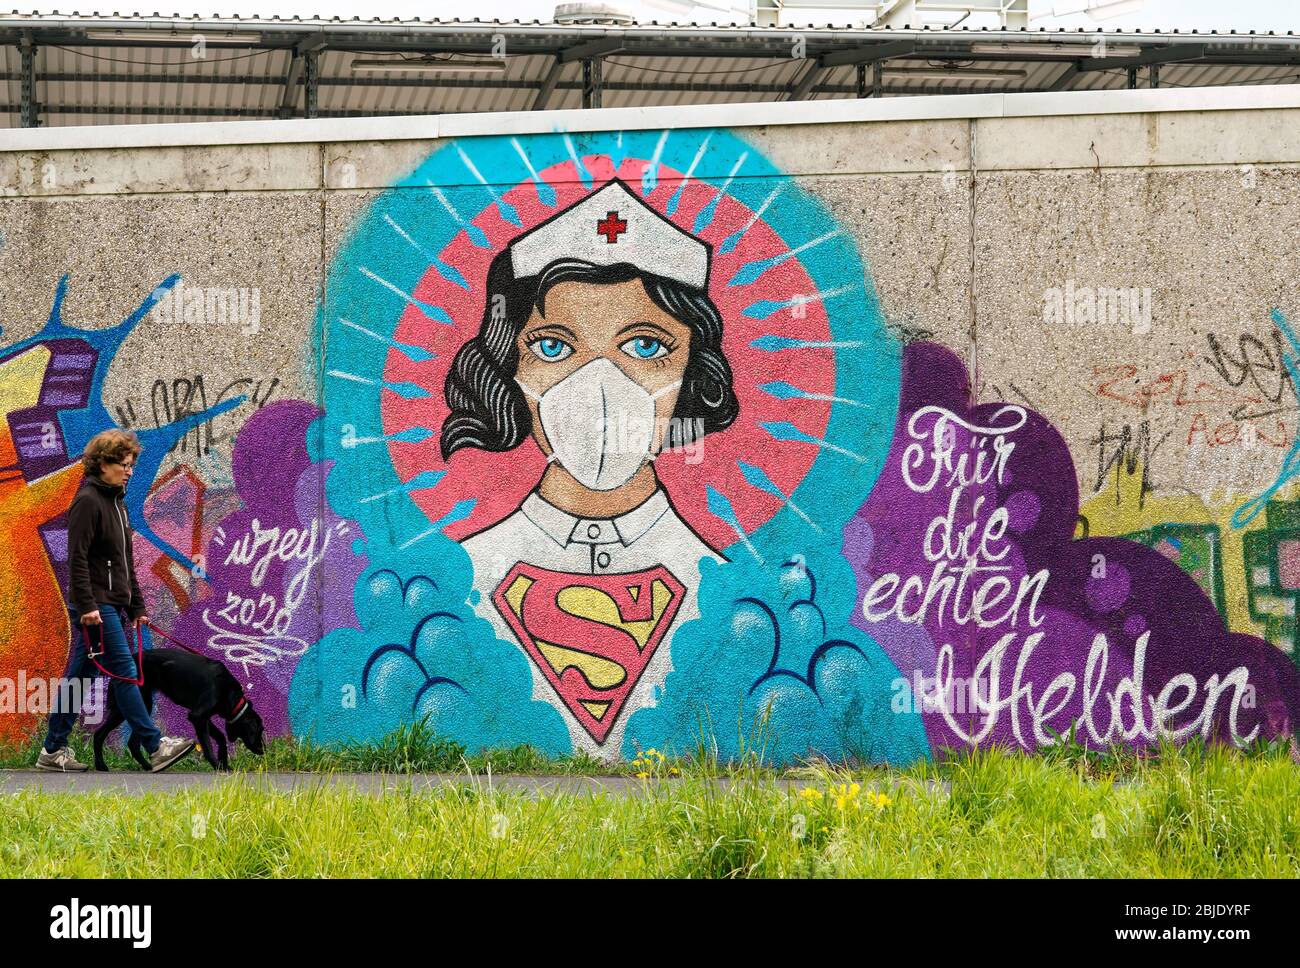 Hamm/Germany, April 29th, 2020: Poeple passing a coronavirus graffiti by street artist Kai „Uzey“ Wohlgemuth showing 'Super-Nurse' with a protection mask on a wall in Hamm, Germany. Scripture says: 'For the real heroes'    ---   Hamm, 29.4.2020 - Corona-Kunst. Das Graffiti „Super-Nurse“ an einer Wand in Hamm. Eine Krankenschwester mit Mundschutz und Supermann-Logo hat der Graffiti-Künstler Kai „Uzey“ Wohlgemuth aus Hamm den echten Helden in der Corona-Krise gewidmet. Stock Photo